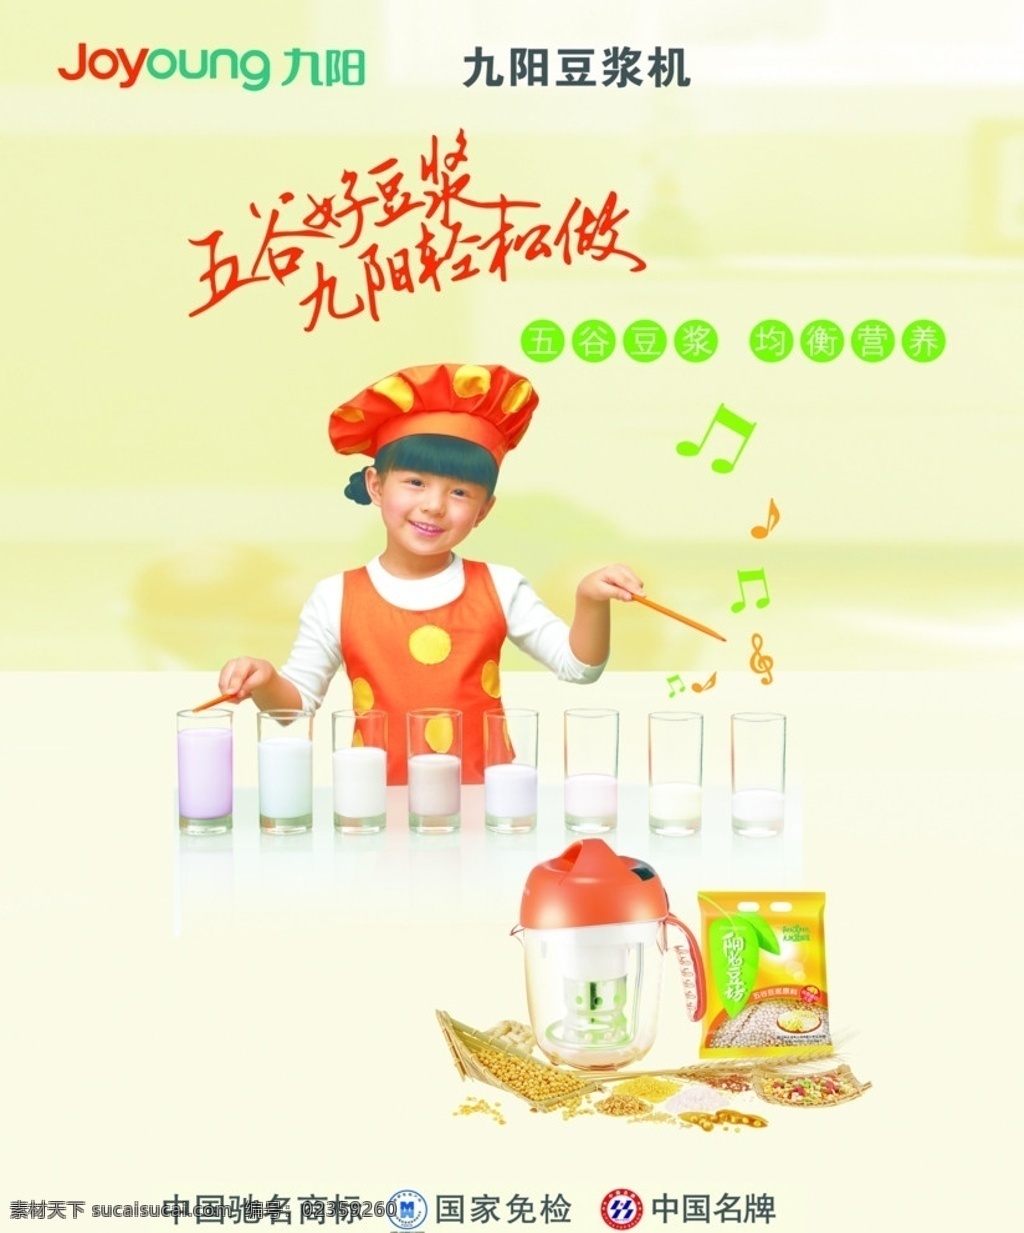 九阳豆浆 豆浆 女孩 豆浆机 logo 九阳 广告设计模板 源文件